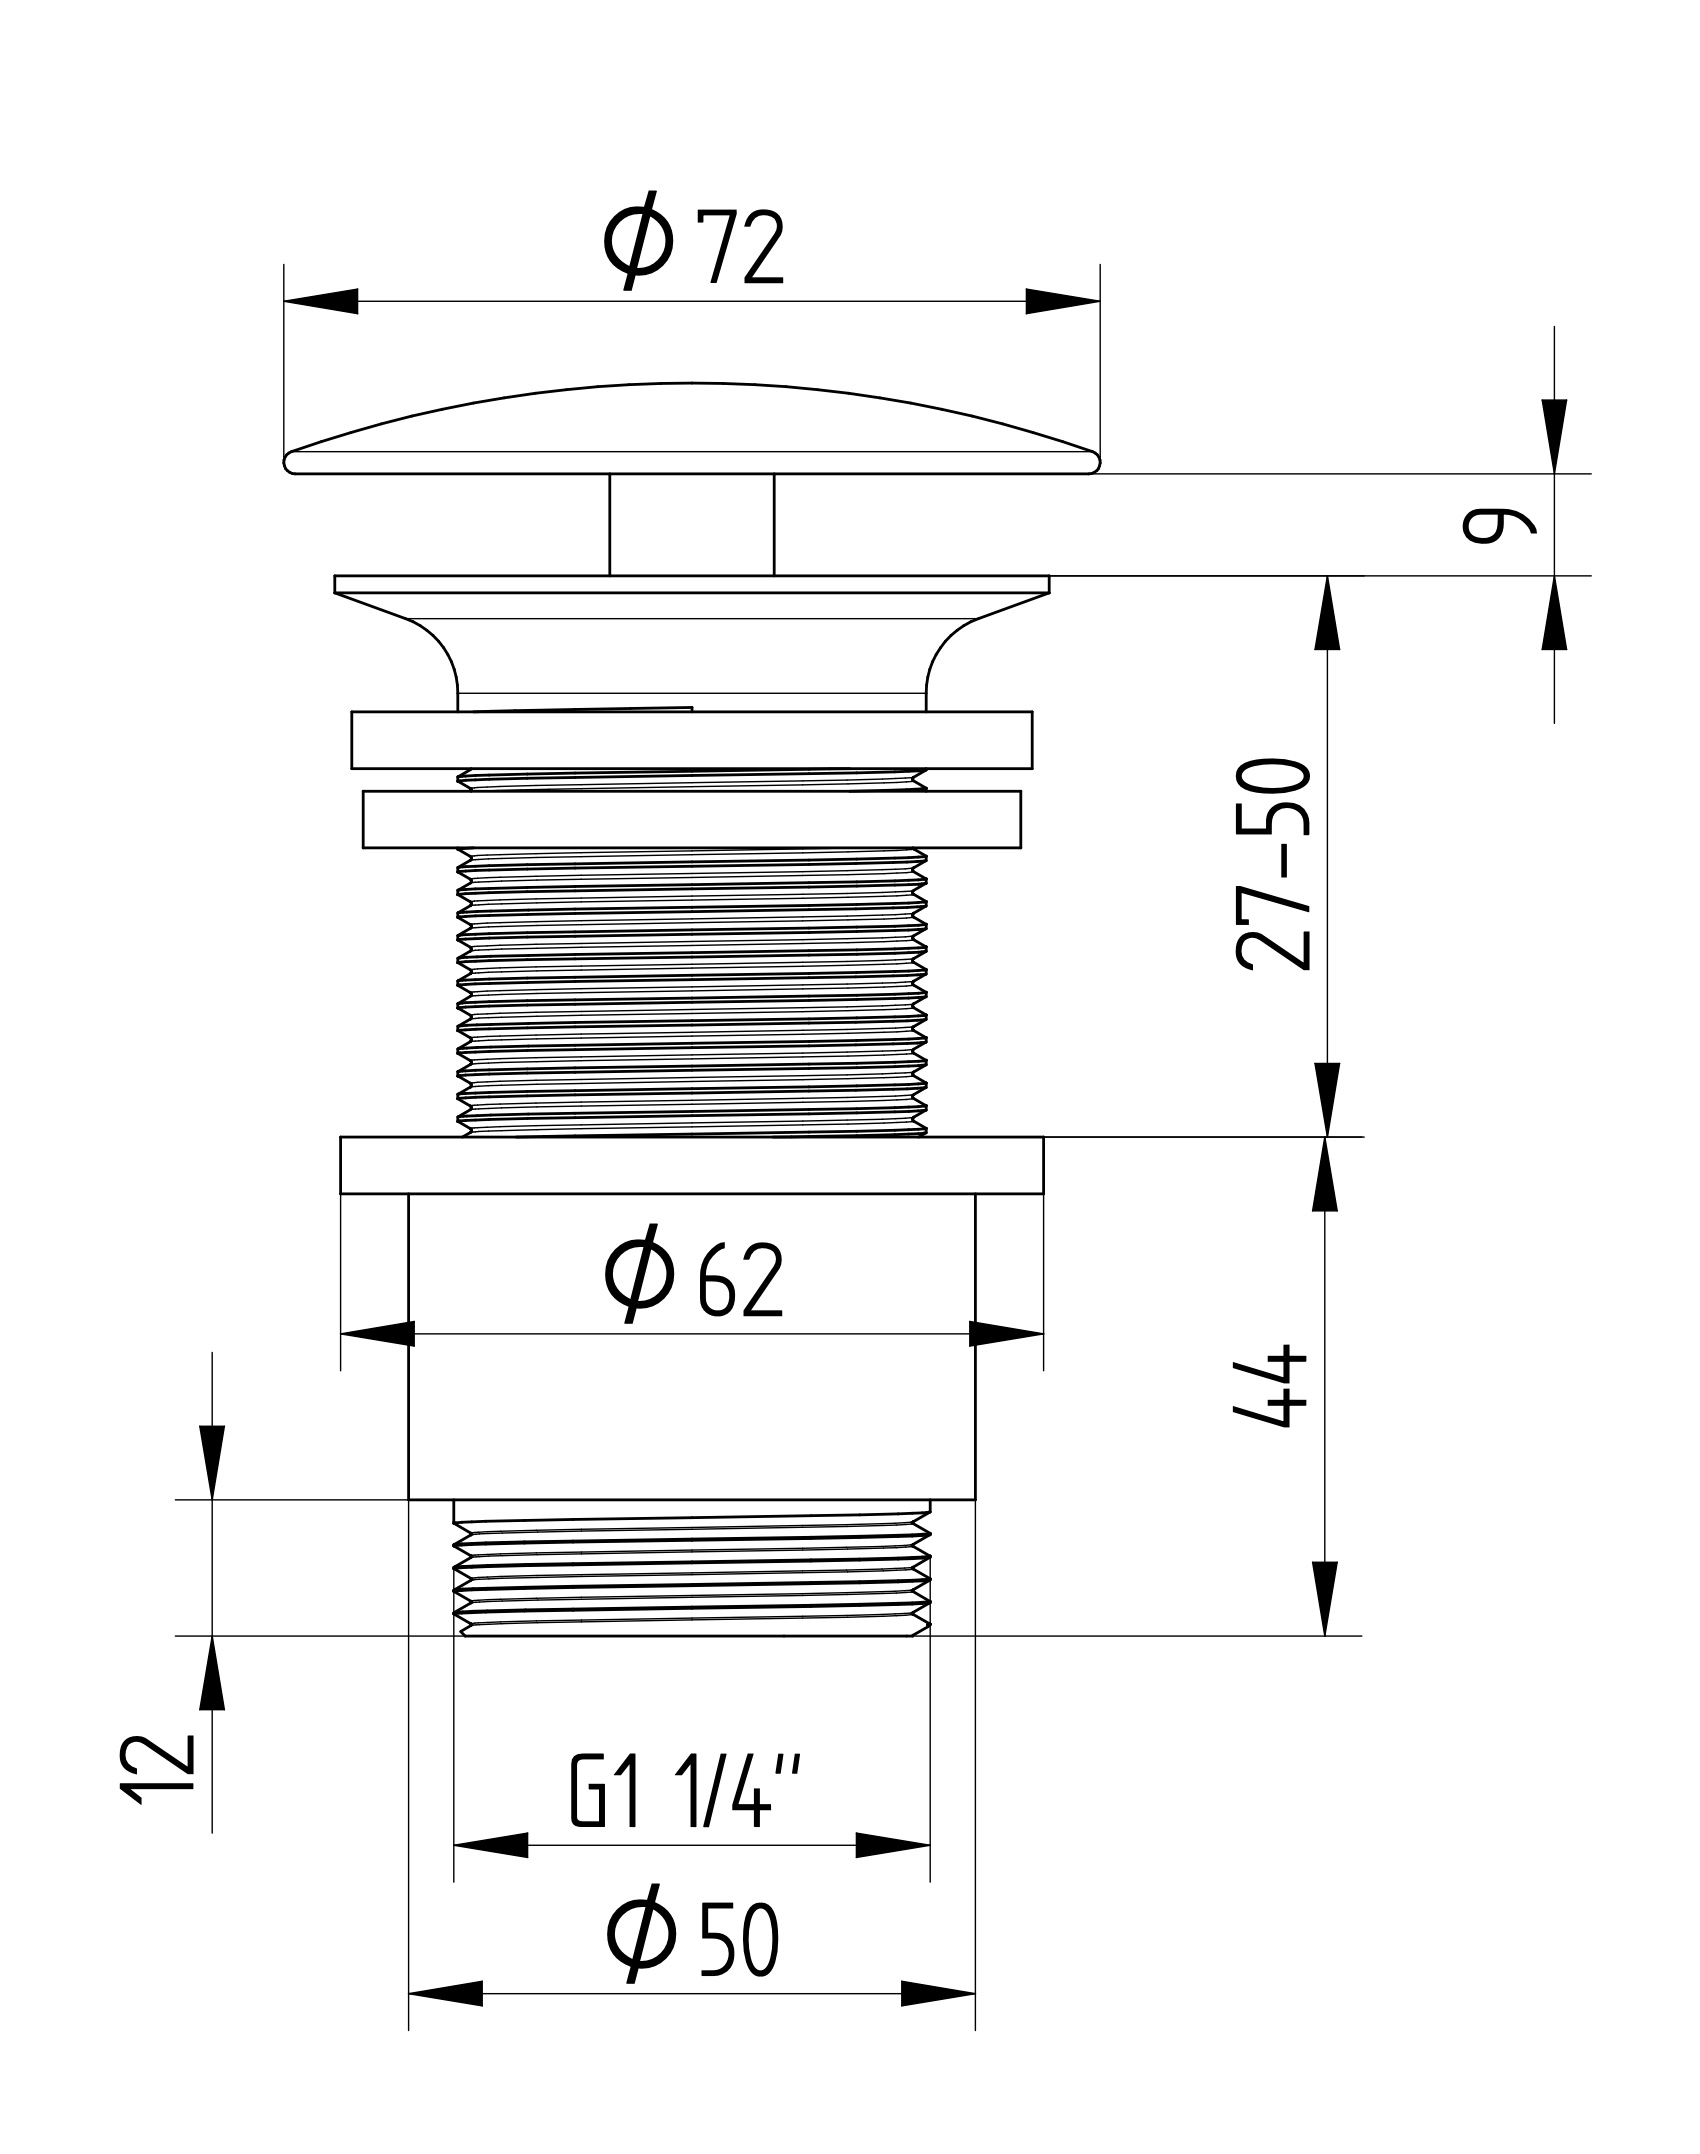 Avenraius Design-Schaftventil 1 ¼" rund ohne Verschluss, Ø 72 mm und ohne Überlauf (900 4207 010)